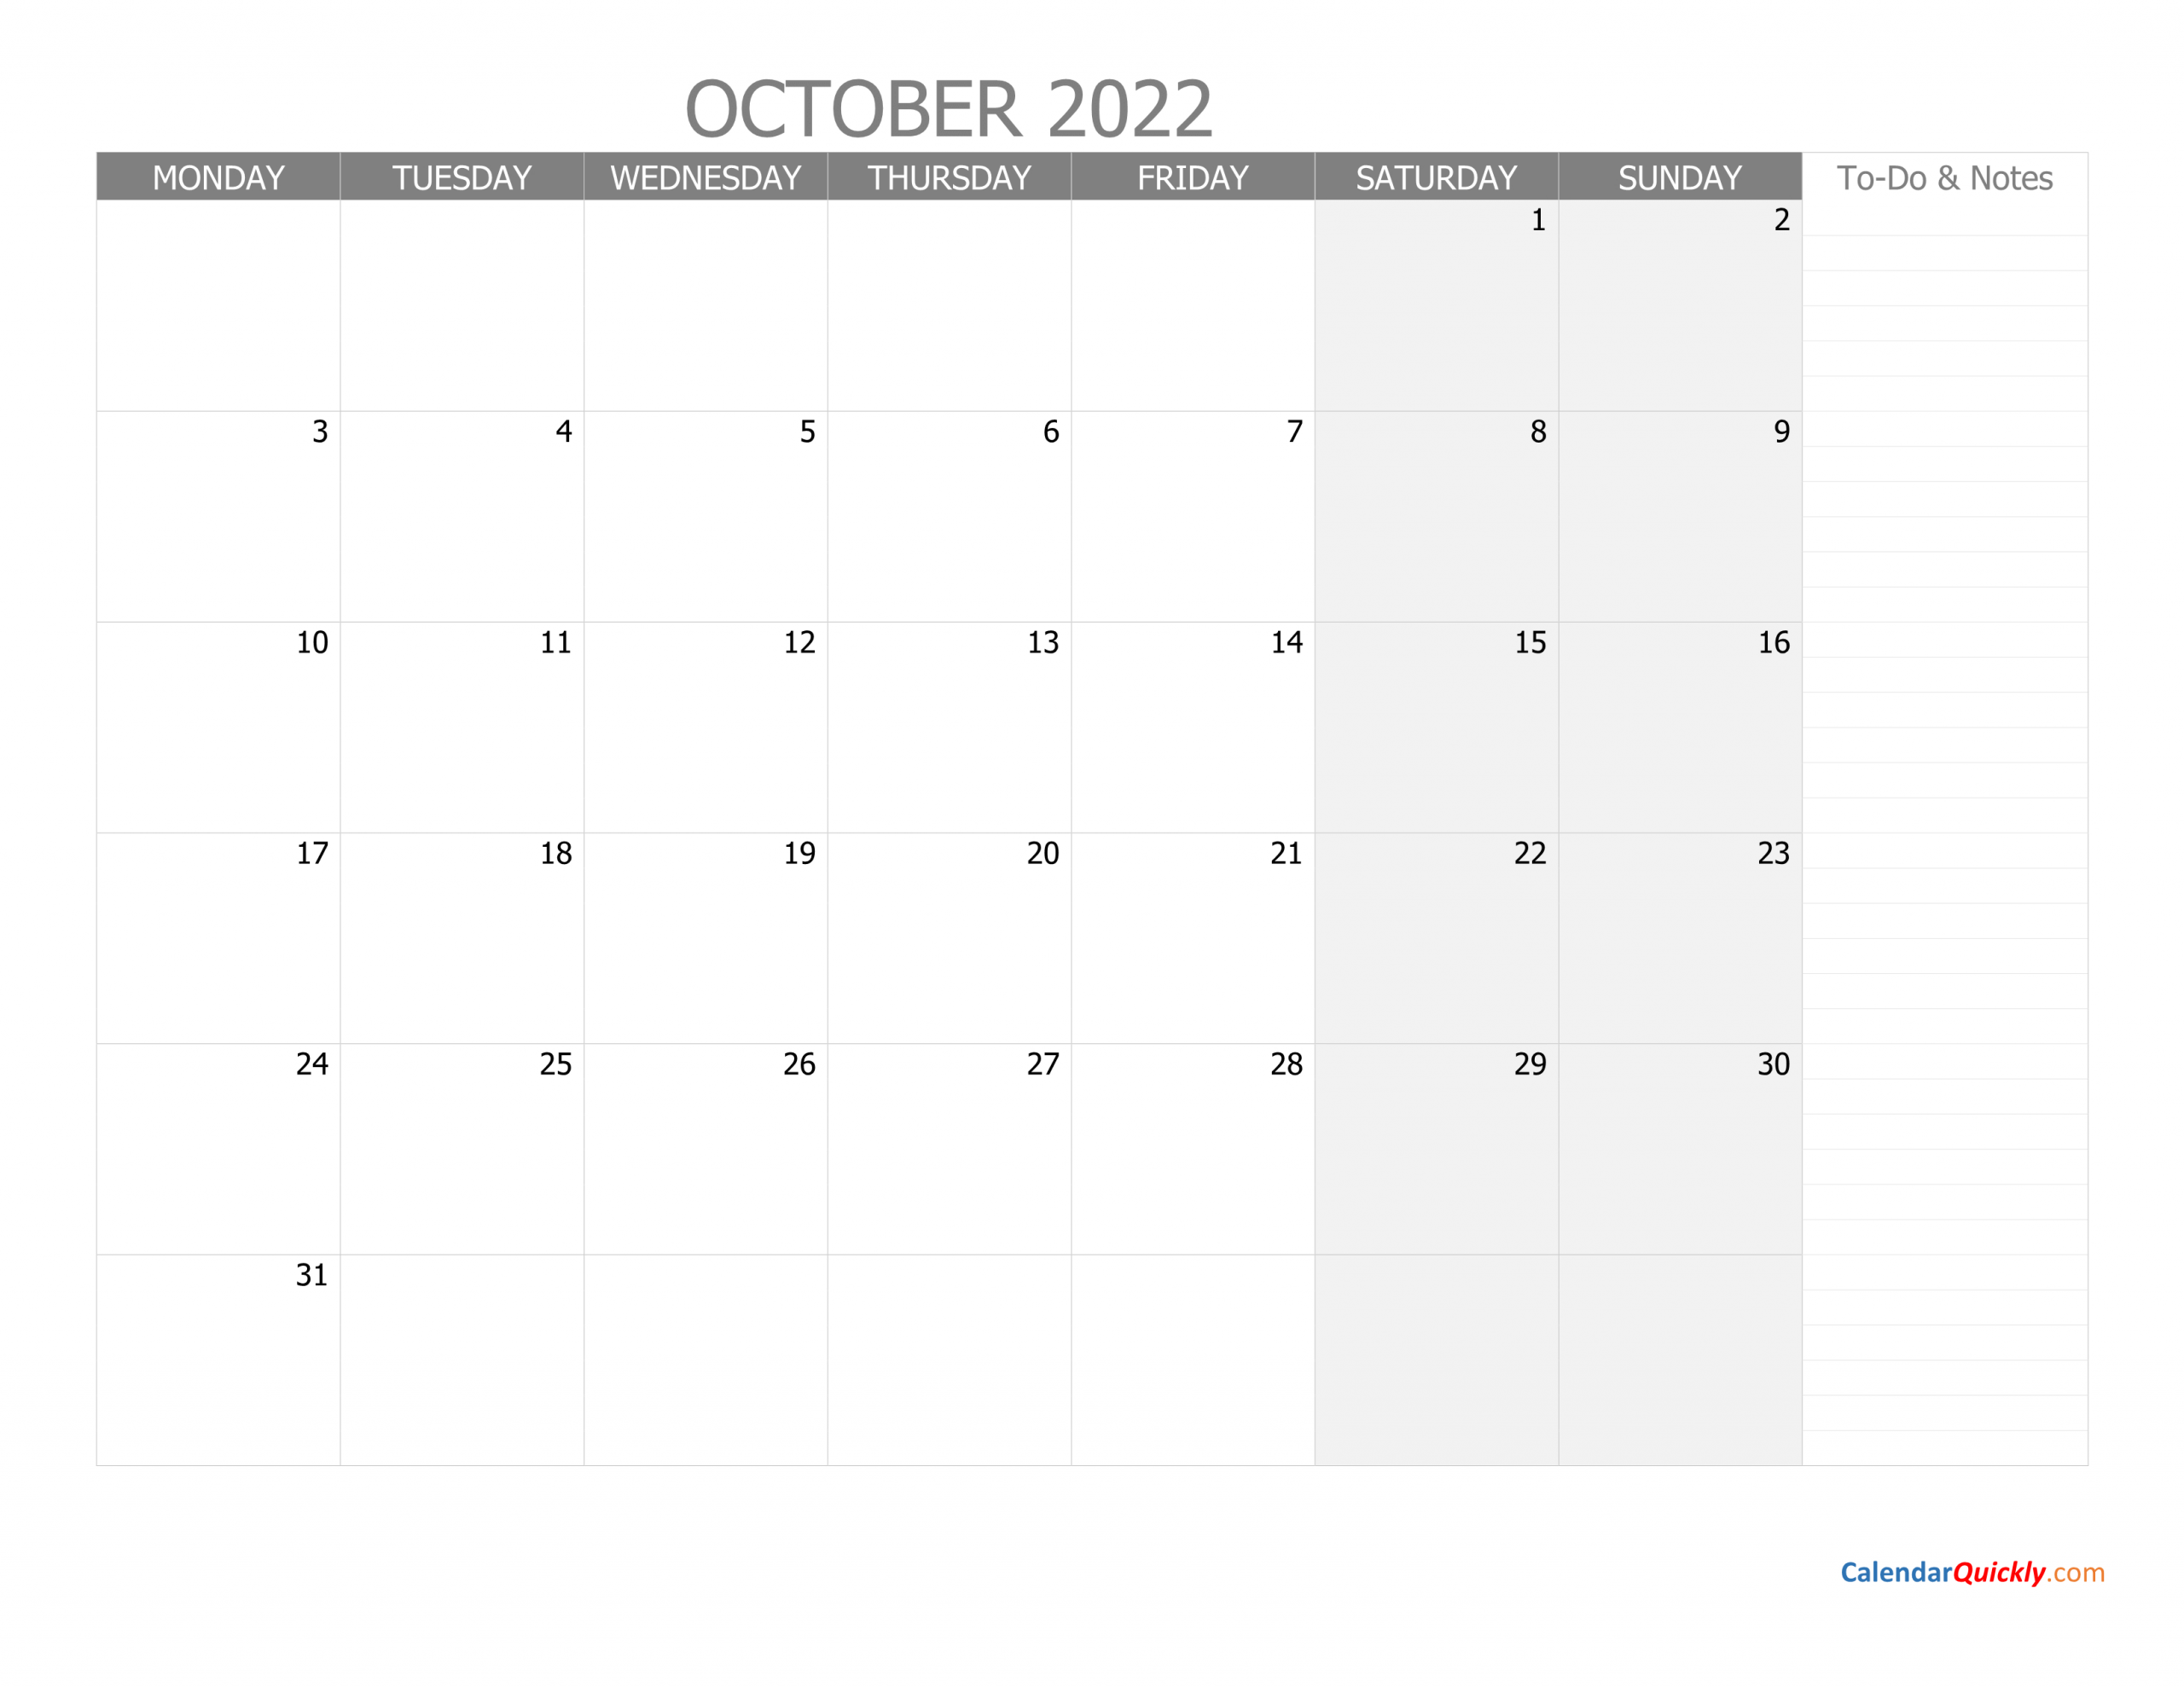 october monday calendar 2022 with notes calendar quickly